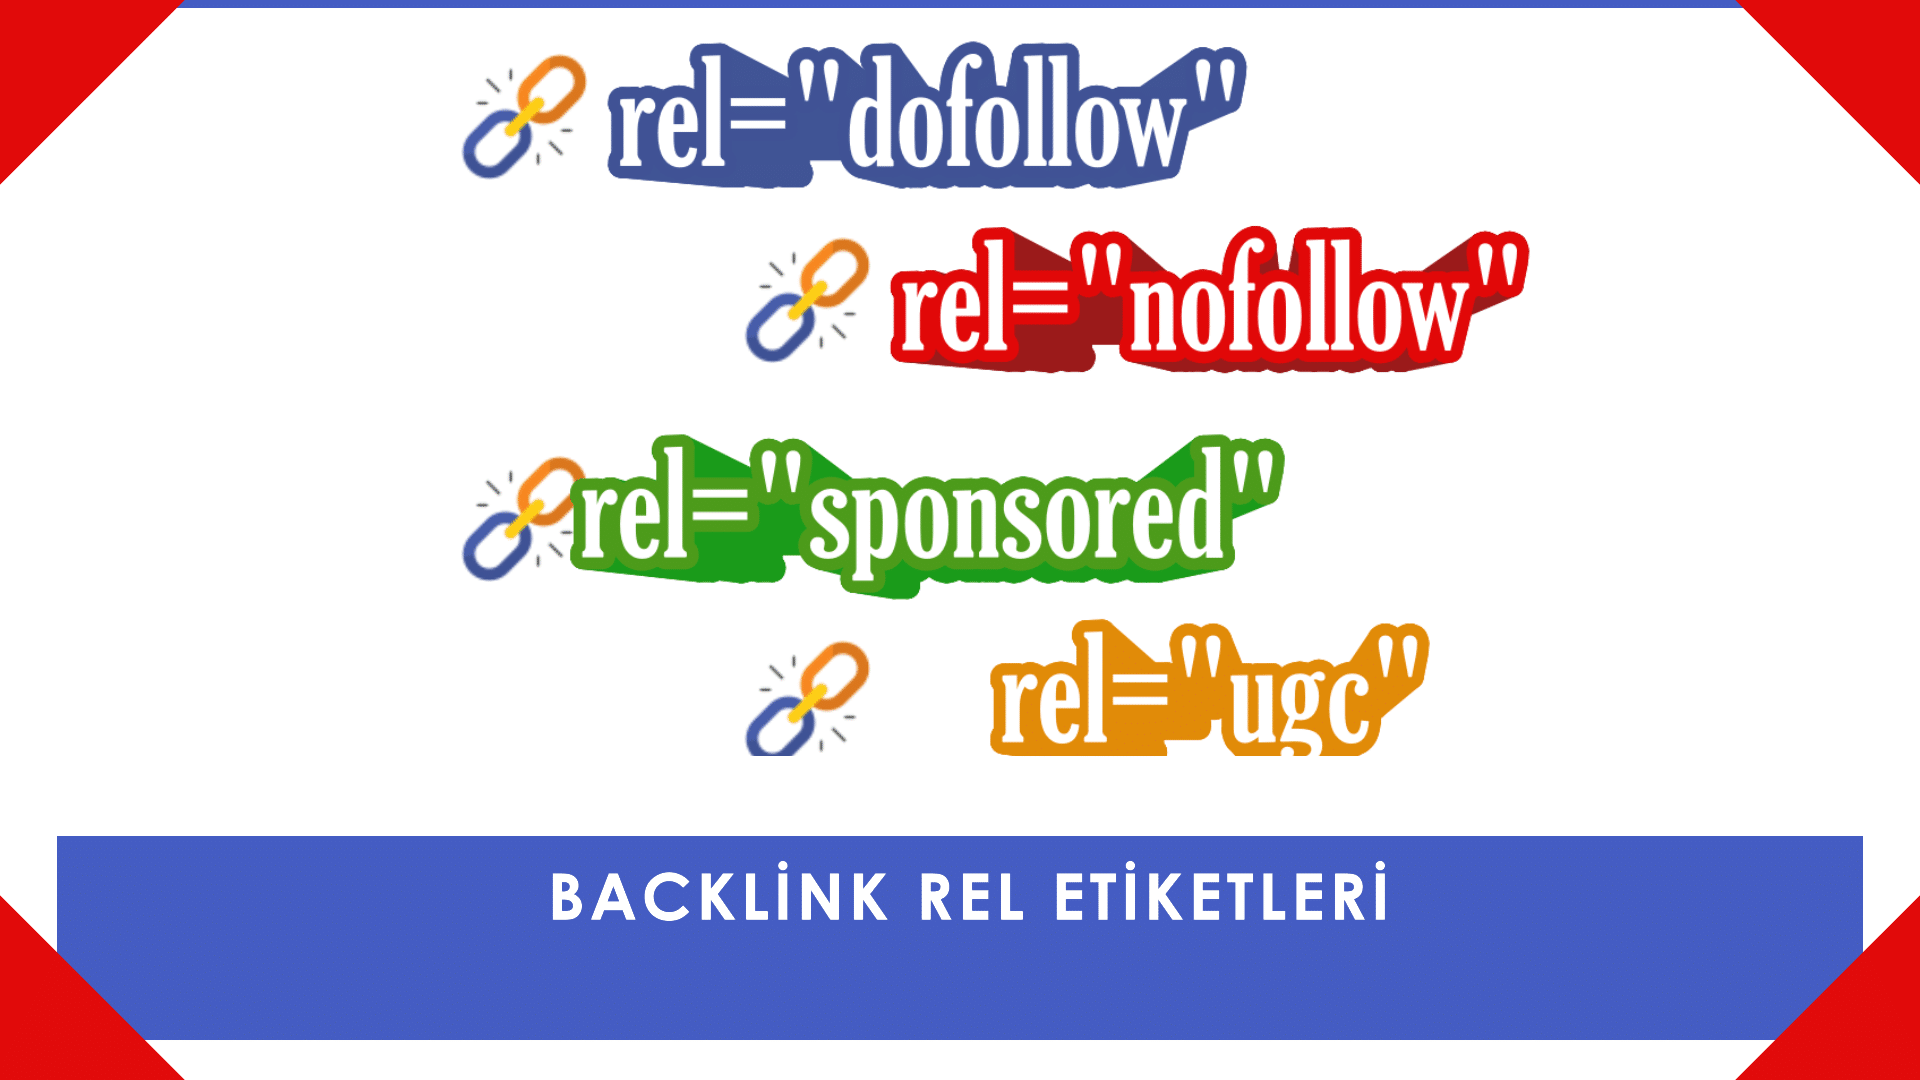 Backlink Rel Etiketlerinin Anlamı ve Aralarındaki Farklar